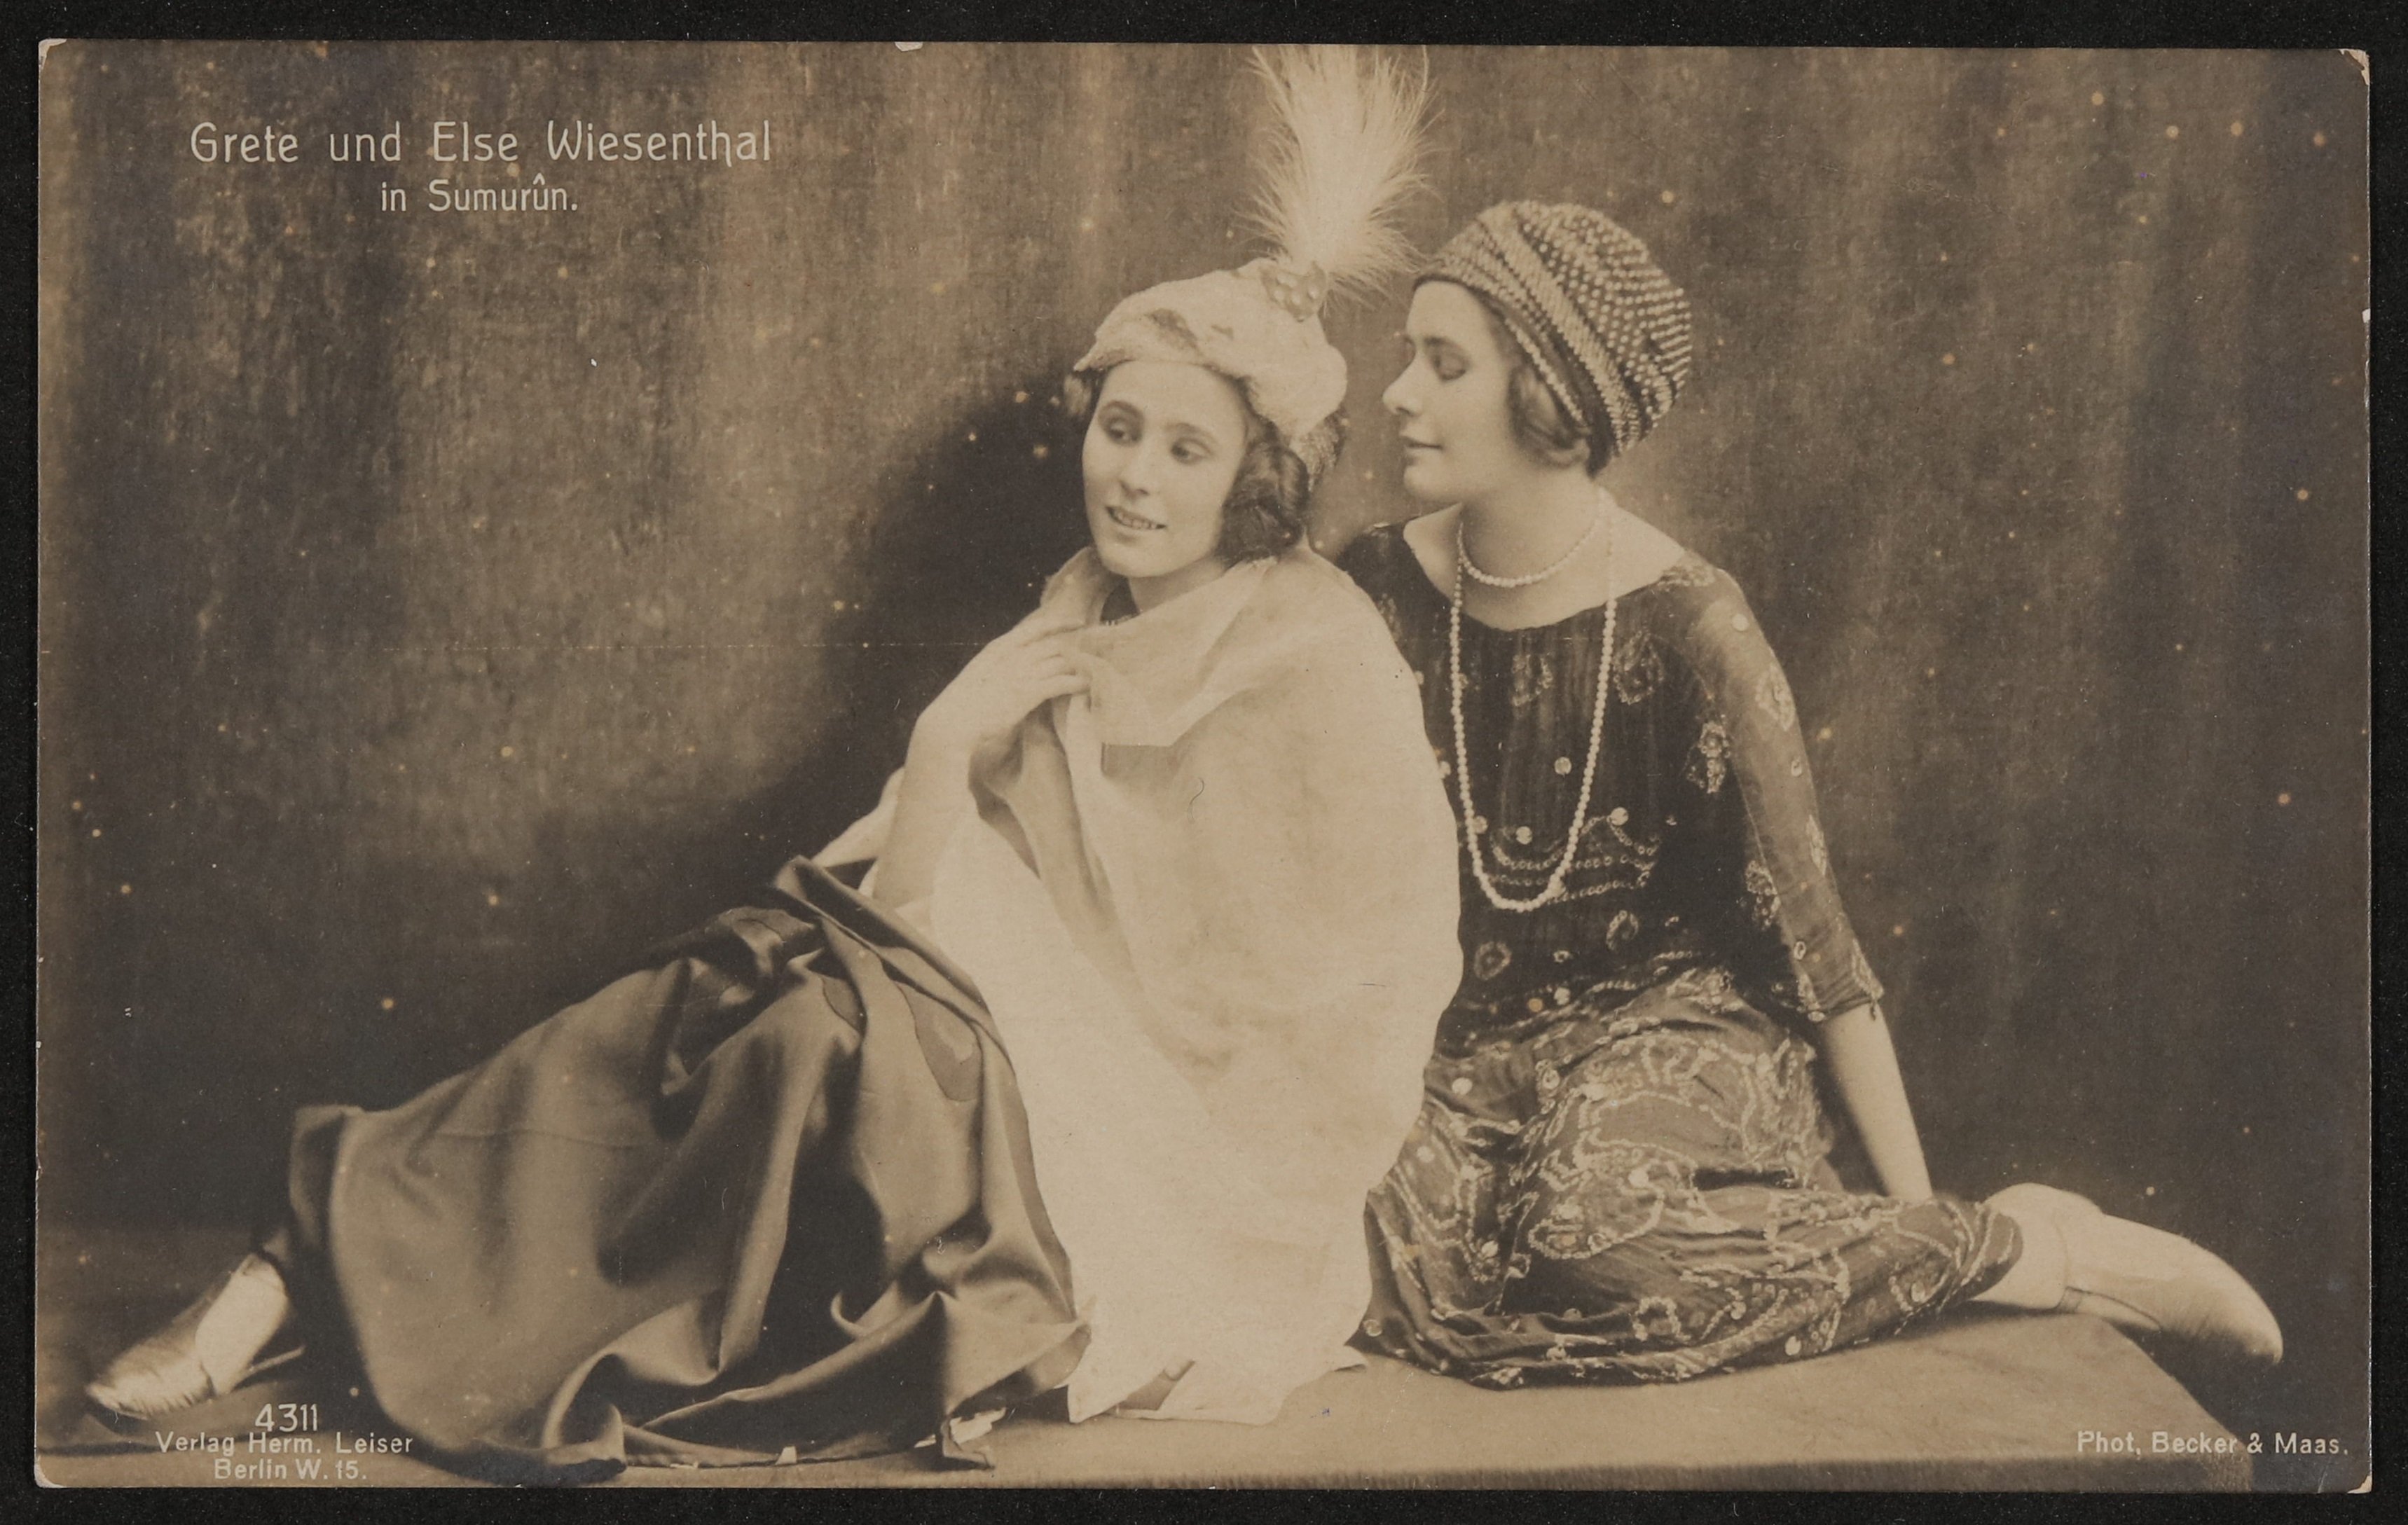 Grete und Elsa Wiesenthal im orientalischen Kostüm aus der Pantomime "Sumurûn" am Deutschen Theater, sitzend (Freies Deutsches Hochstift / Frankfurter Goethe-Museum CC BY-NC-SA)